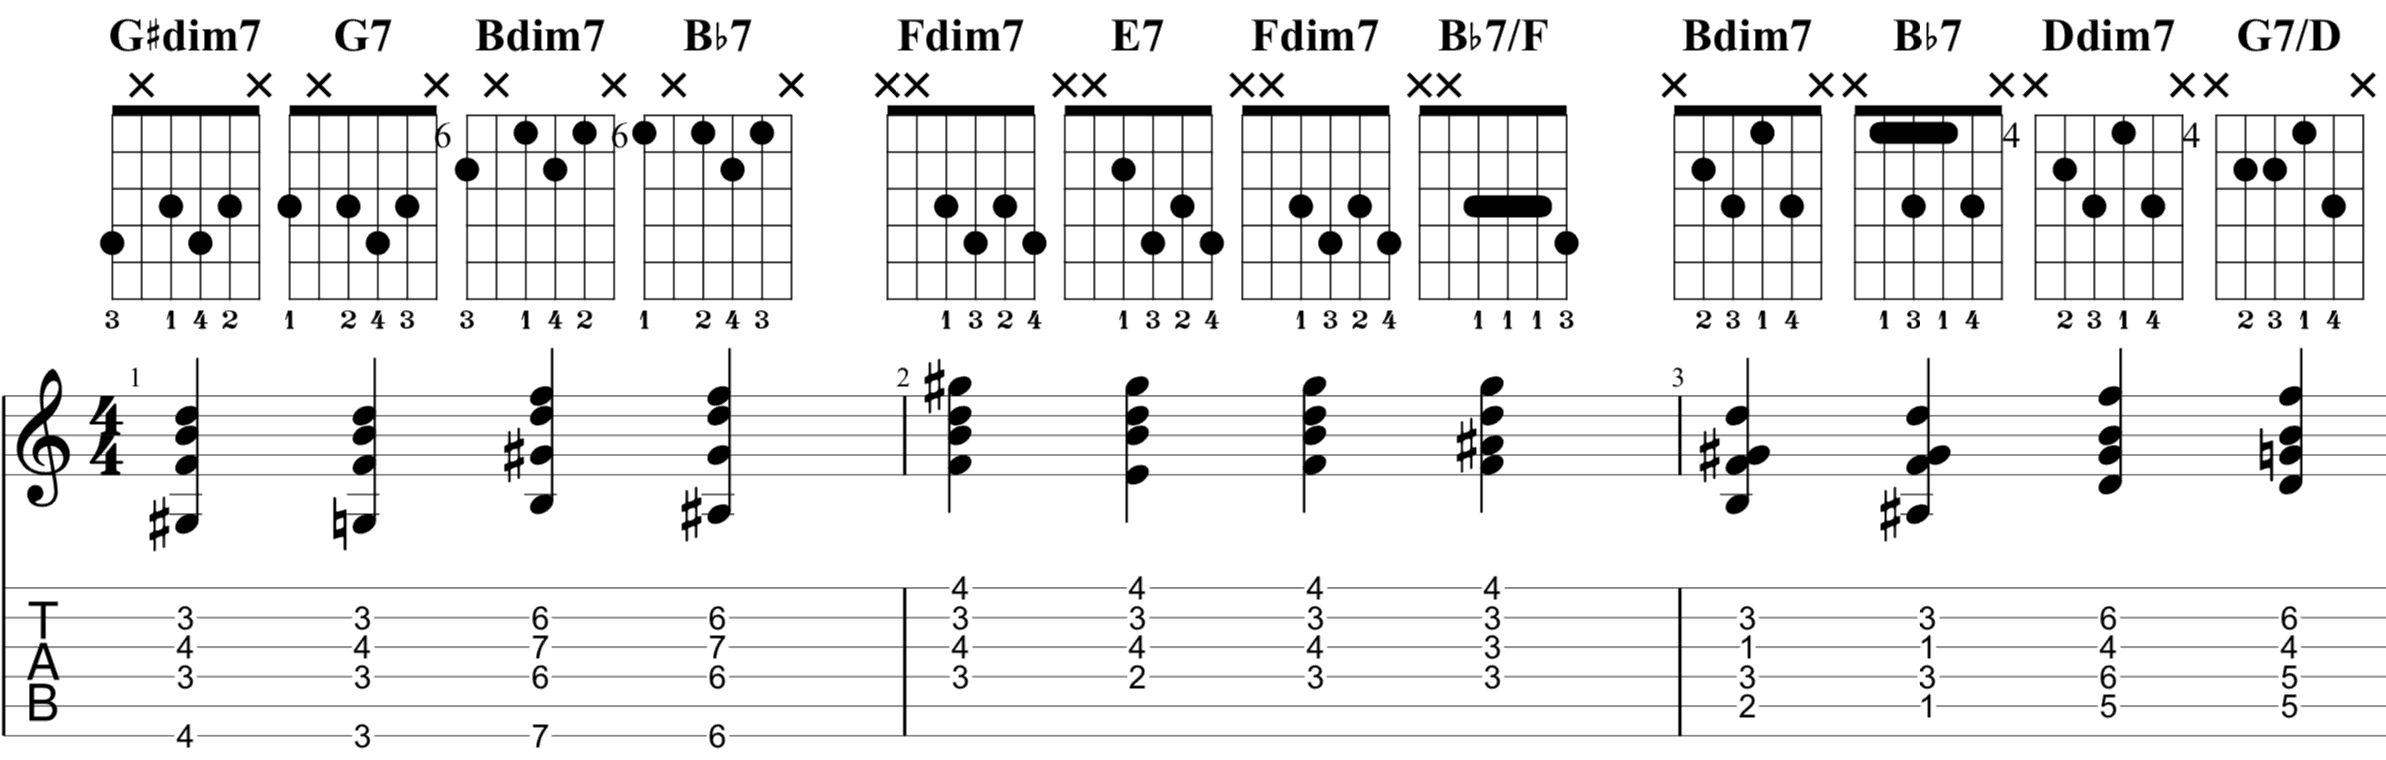 Gdim7 guitar chord easy.